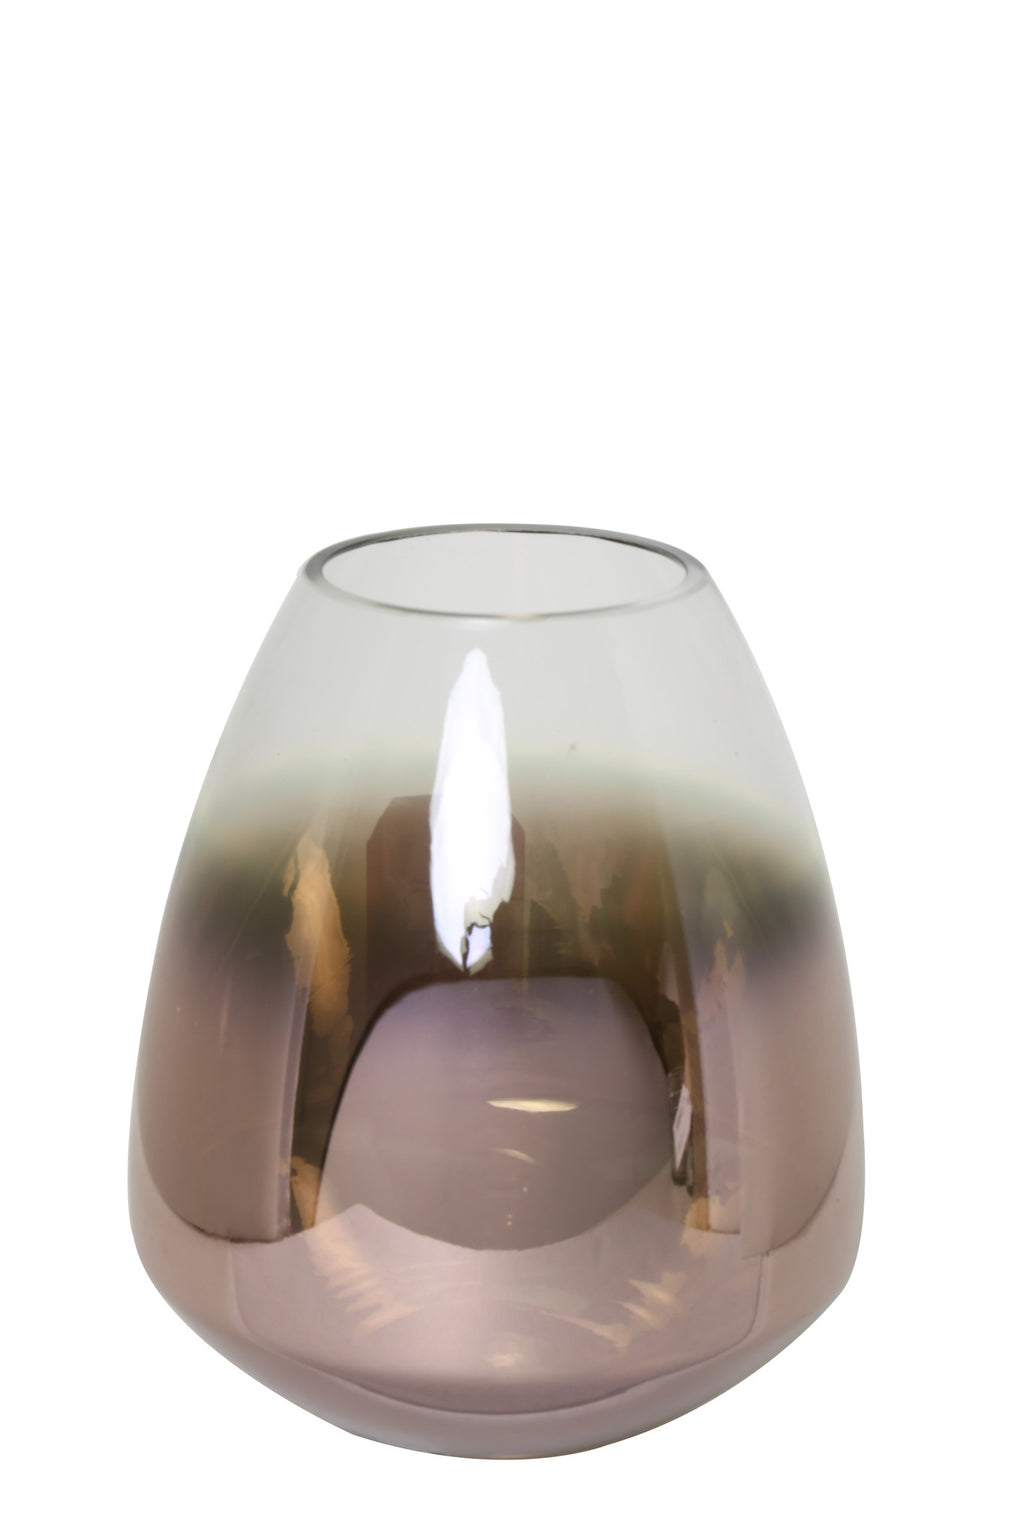 Hurricane glass lantern in copper ombre